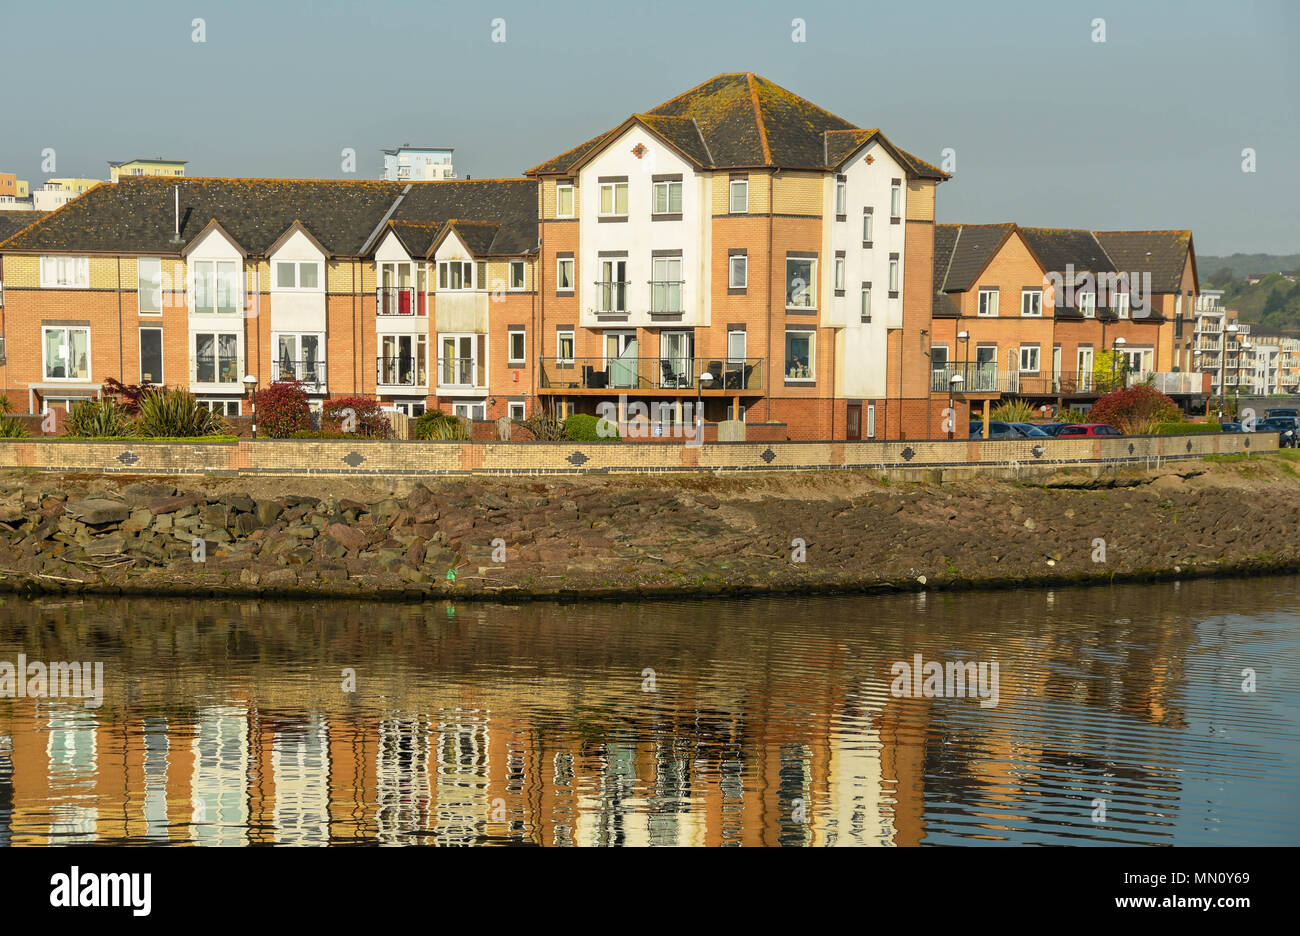 Waterside che vivono nella Baia di Cardiff. Nuove case erano parte della rigenerazione del ex dockland Foto Stock